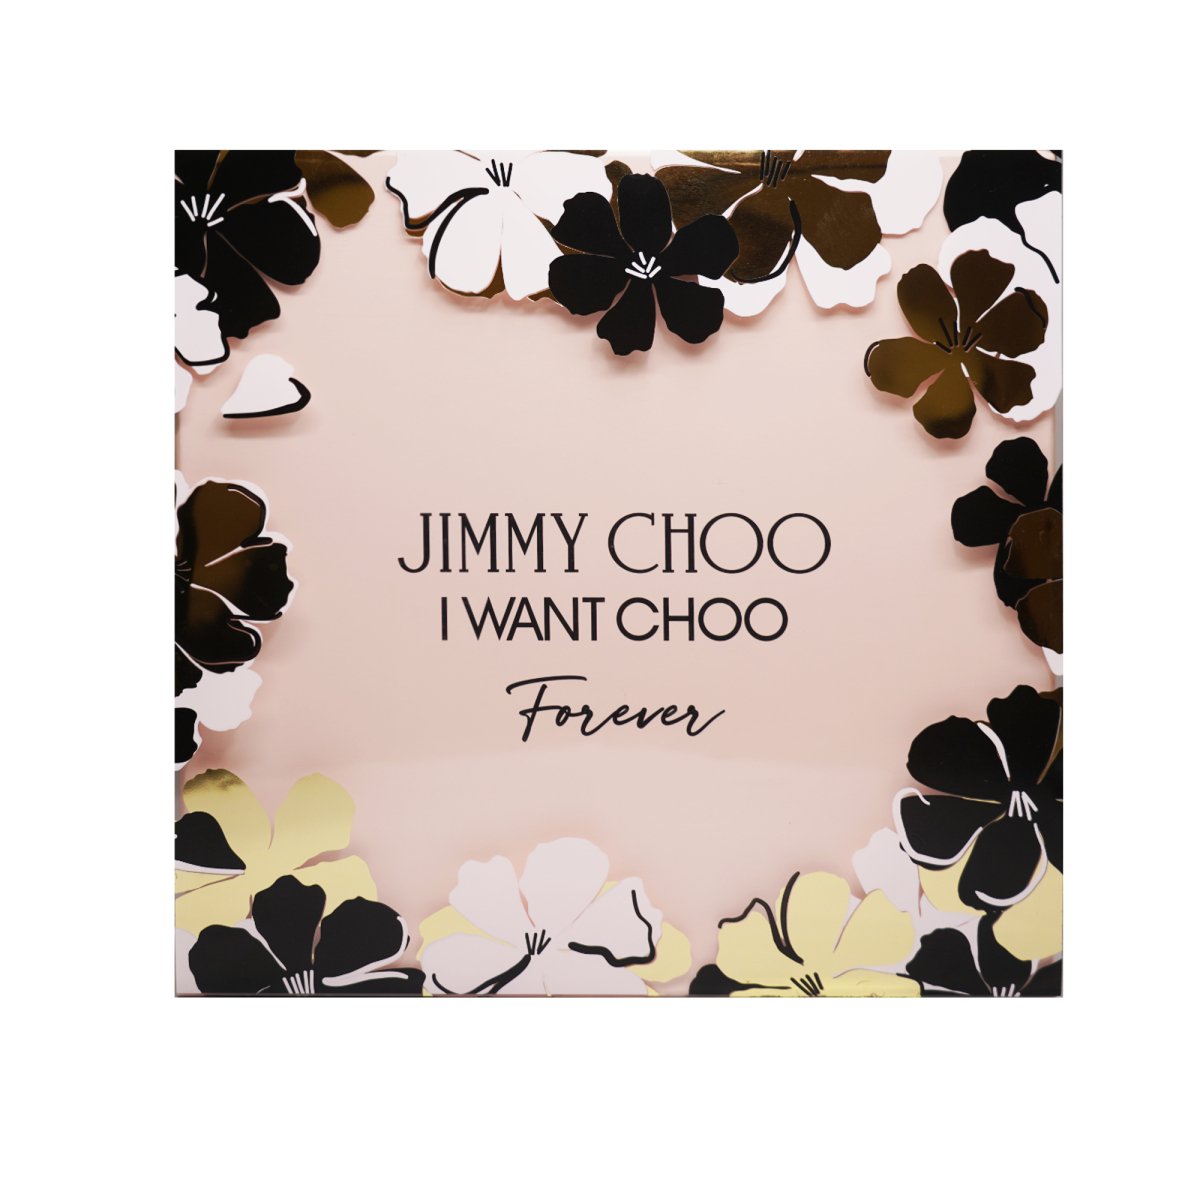 Jimmy Choo I Want Choo Forever, Perfume Headquarters - Jimmy Choo - Gift Set